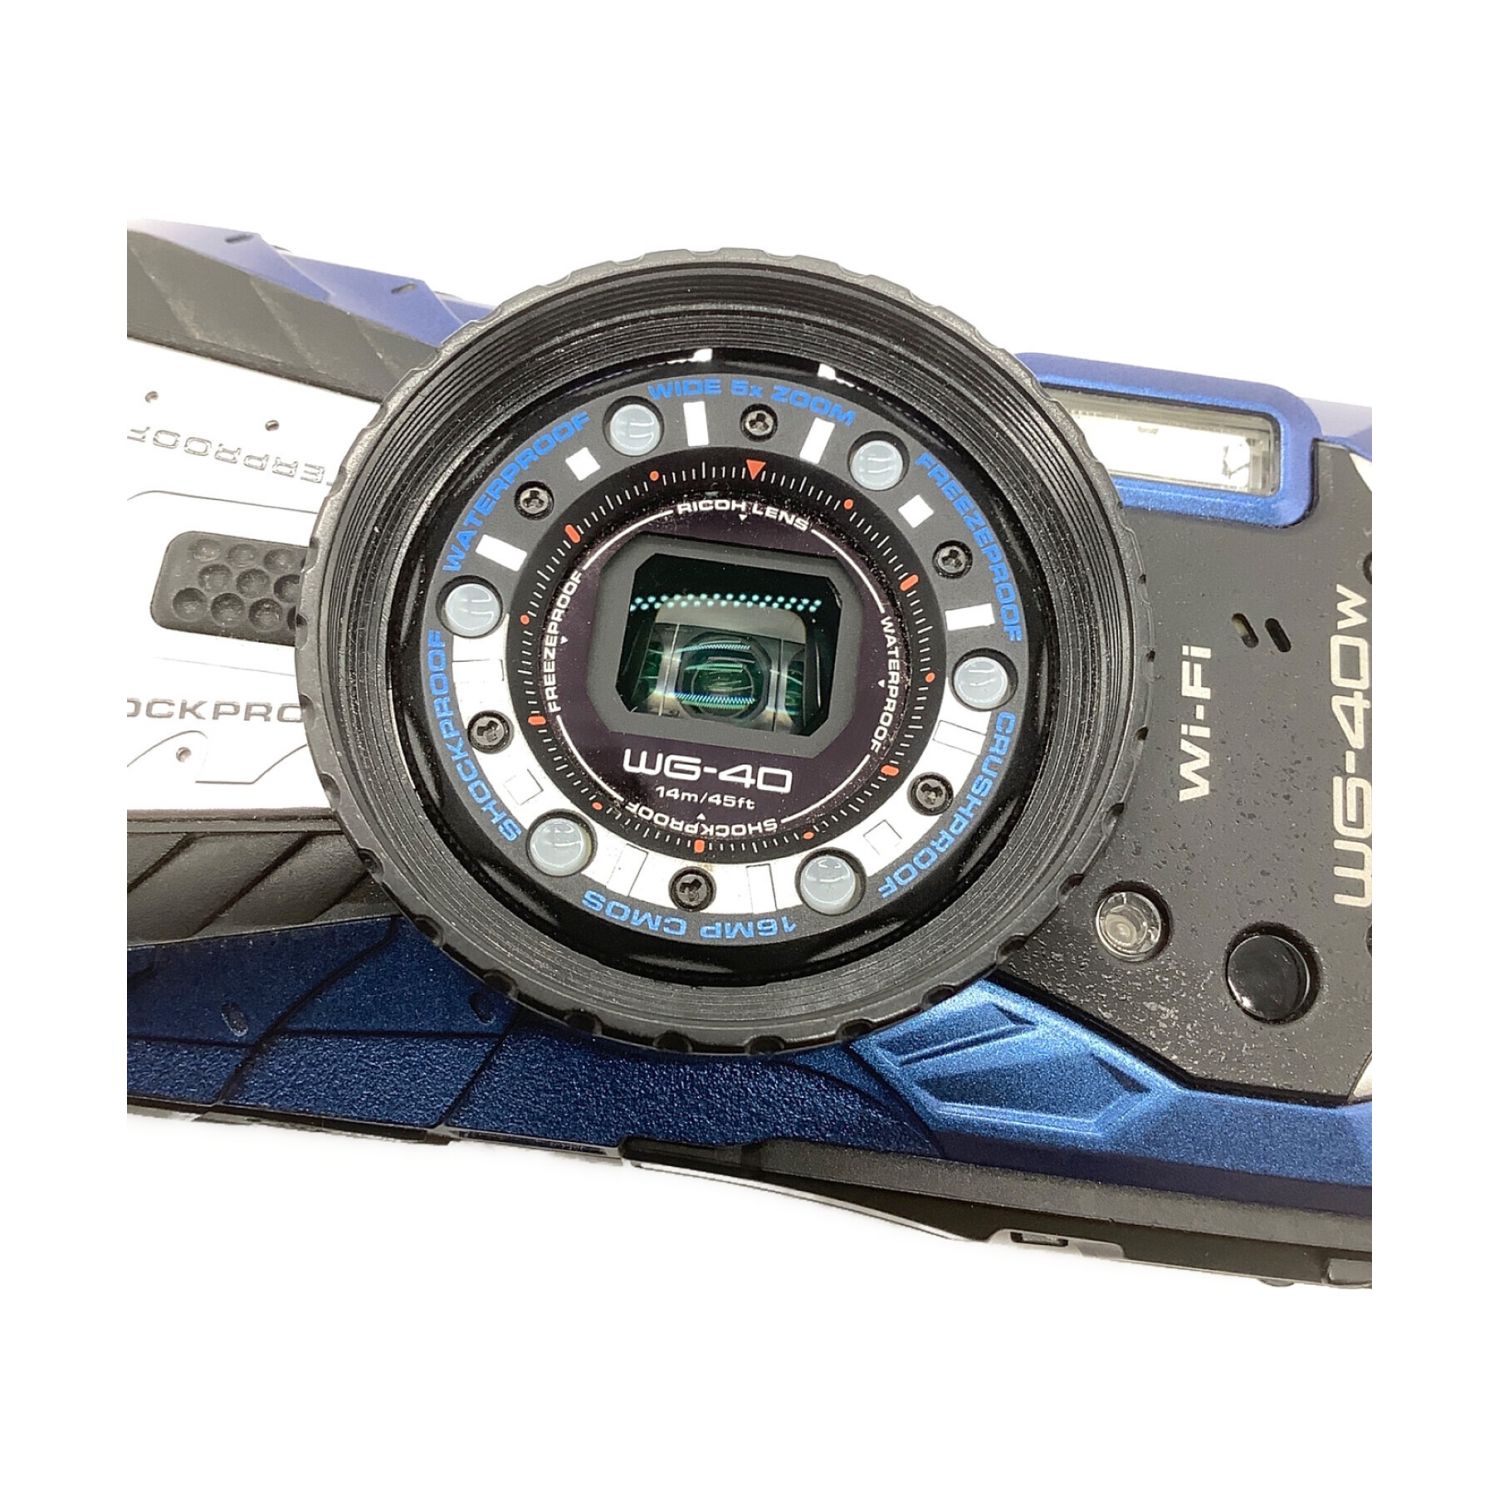 RICOH 防水デジタルカメラ RICOH WG-40 ブラックカメラ - コンパクト 